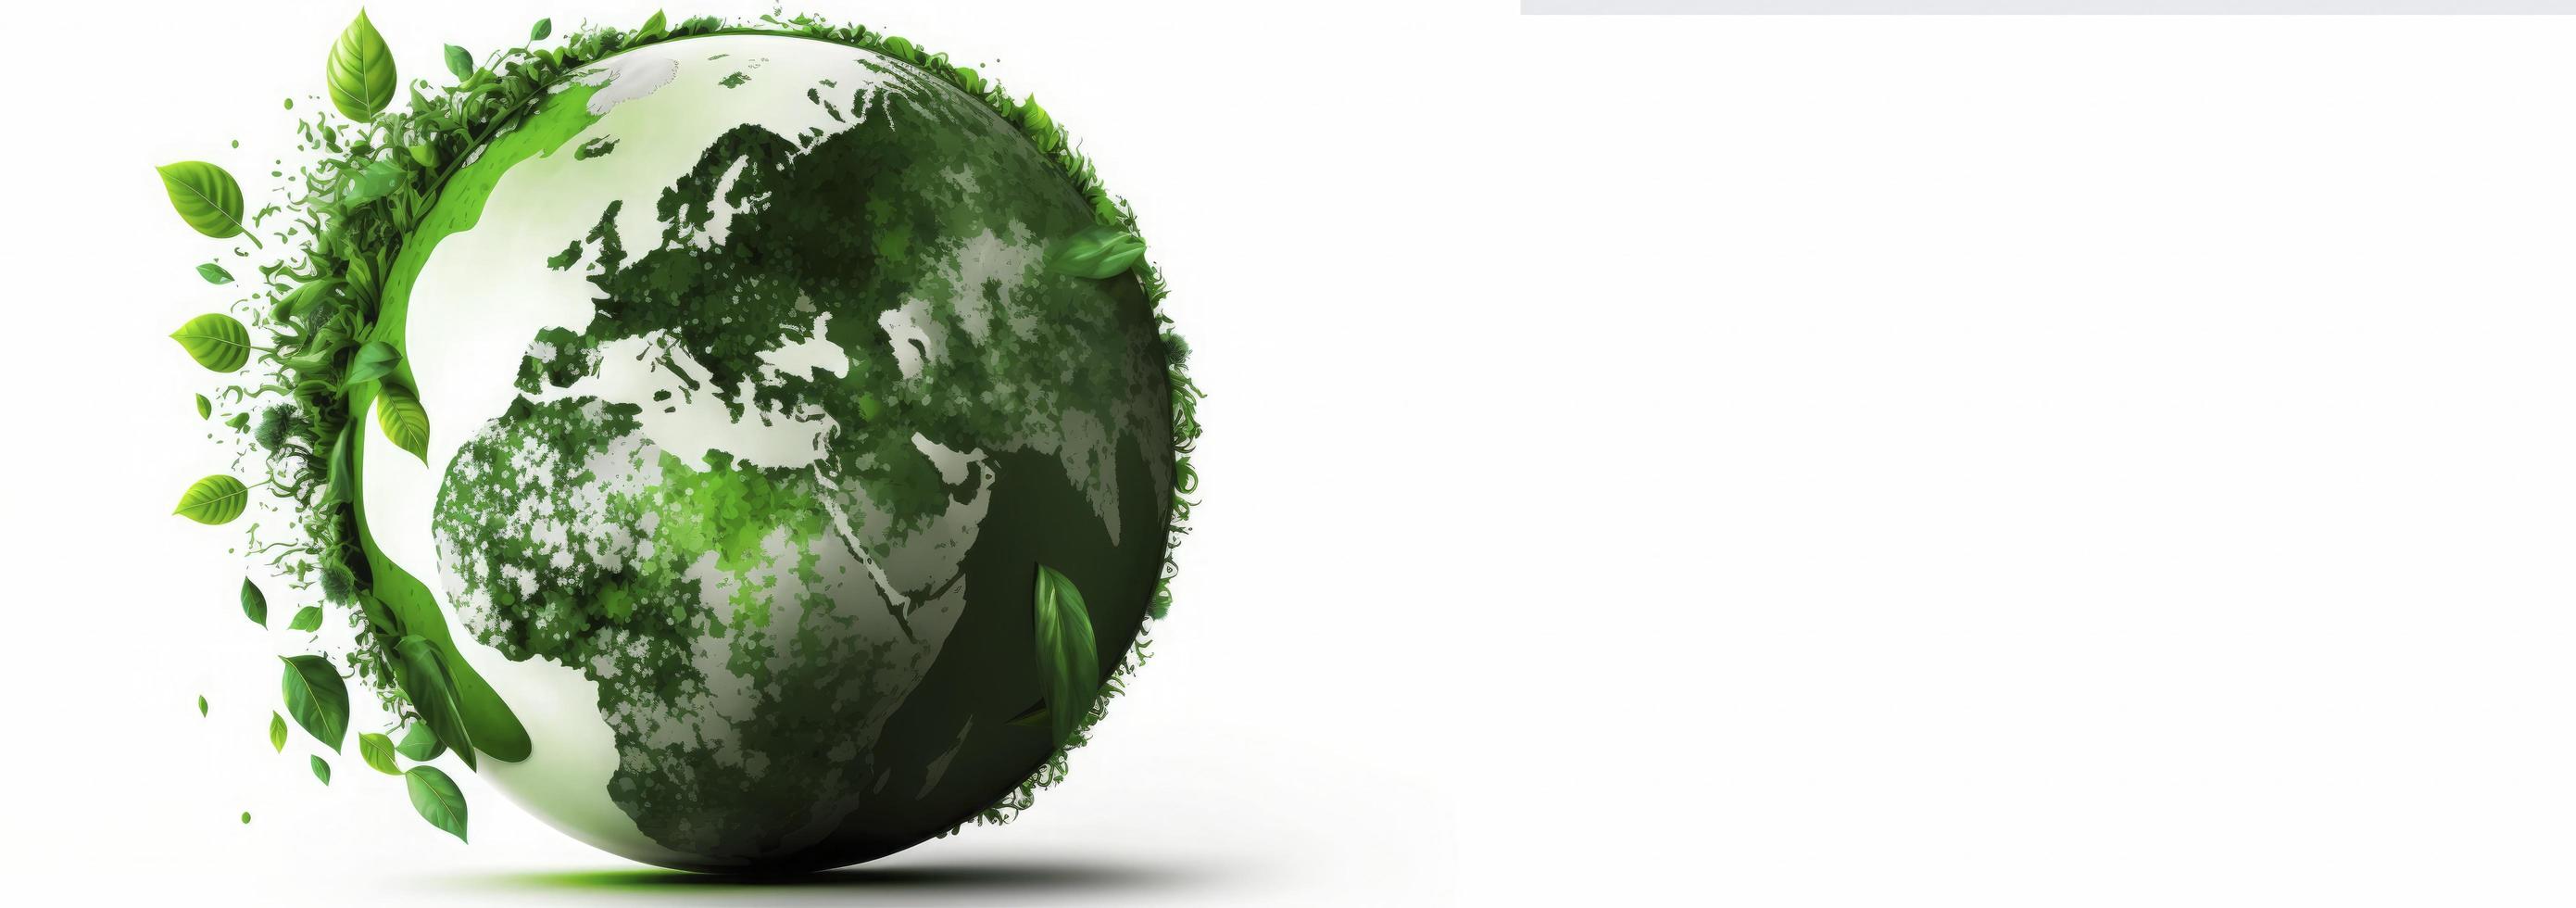 värld jord dag begrepp. illustration av de grön planet jord på en vit bakgrund. jord dag affisch, baner, kort, april 22, sparande de planet, miljö, planet jorden, generera ai foto